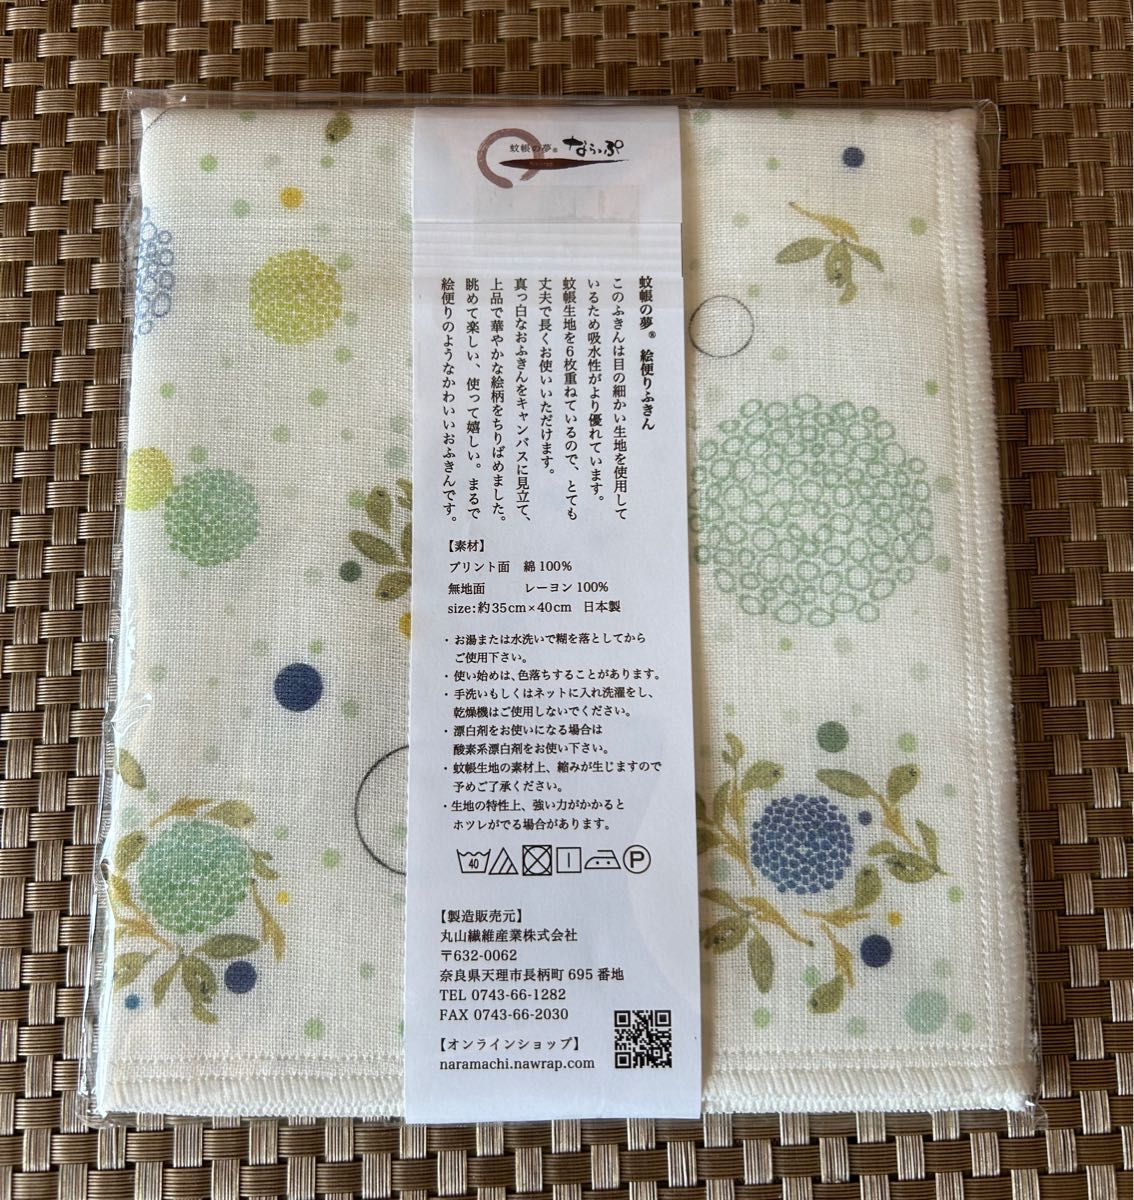 中川政七商店の赤富士ふきんとならっぷの蚊帳の夢絵便りふきんの２枚セット